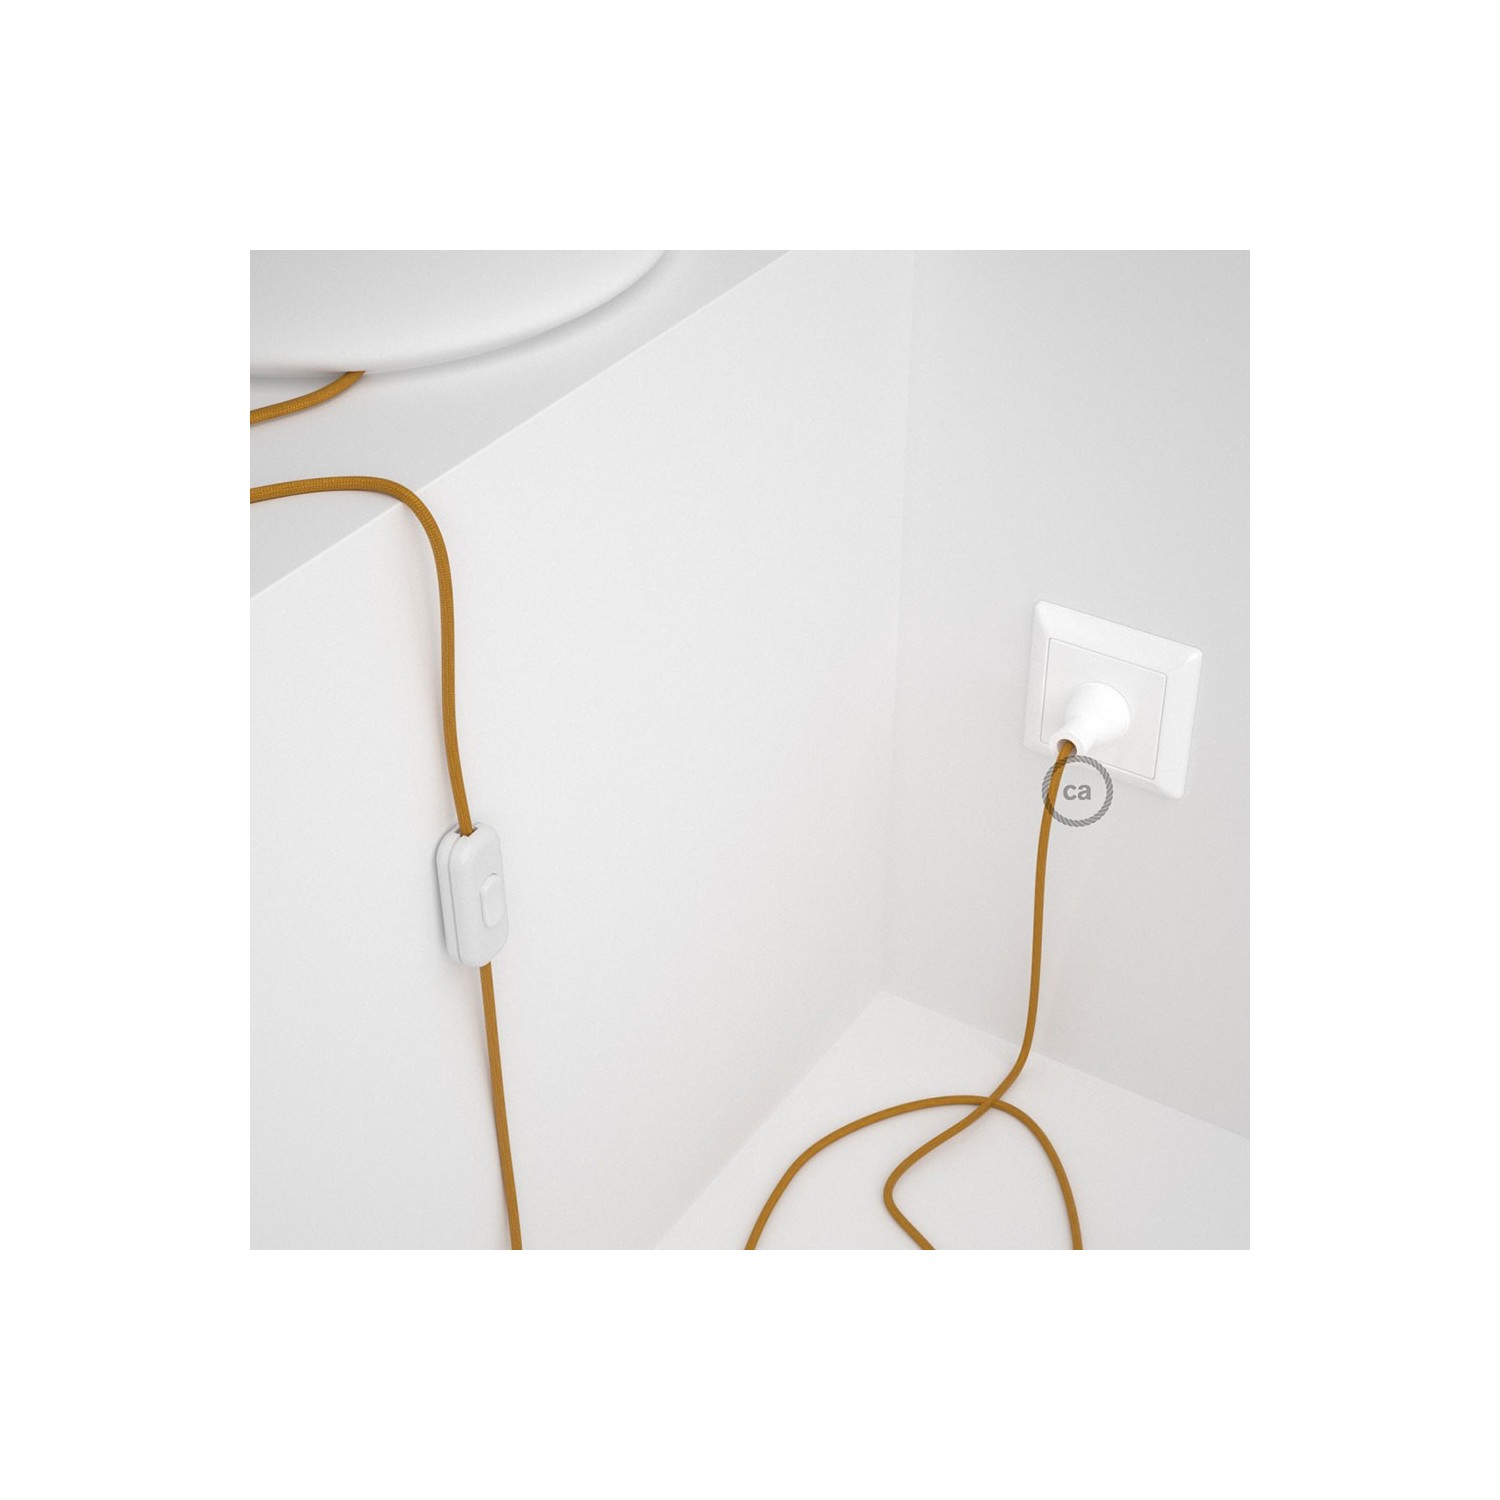 Cableado para lámpara de mesa, cable RM05 Rayón Dorado 1,8 m. Elige el color de la clavija y del interruptor!